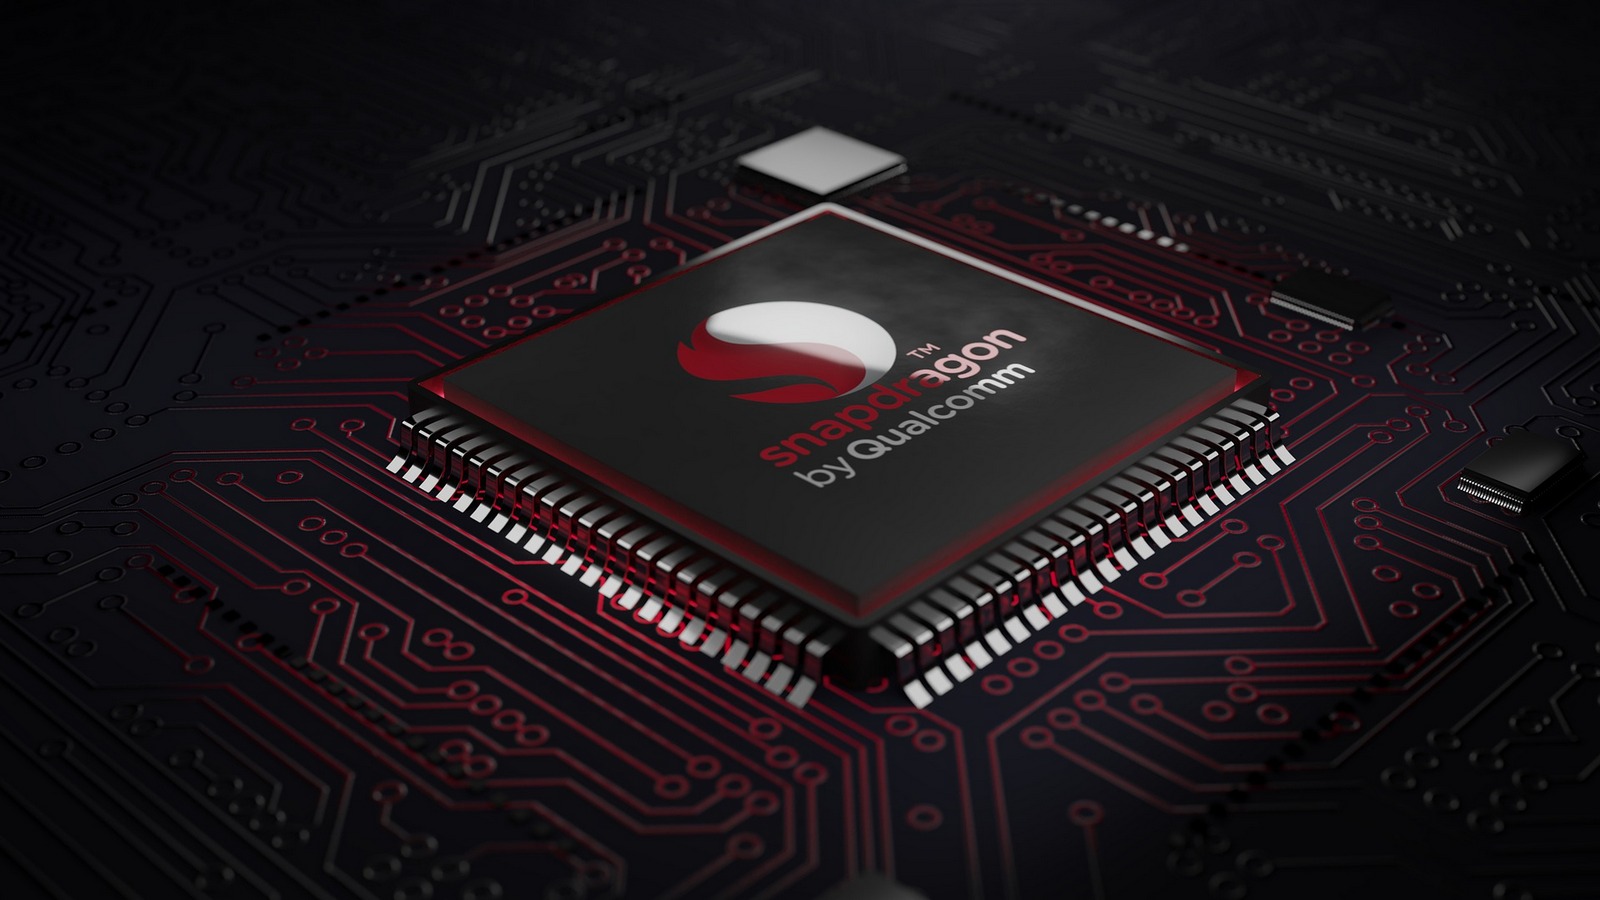 Le nouveau chipset Dimensity 9000 de MediaTek peut rivaliser sur un pied d’égalité avec le Snapdragon, le fleuron de Qualcomm